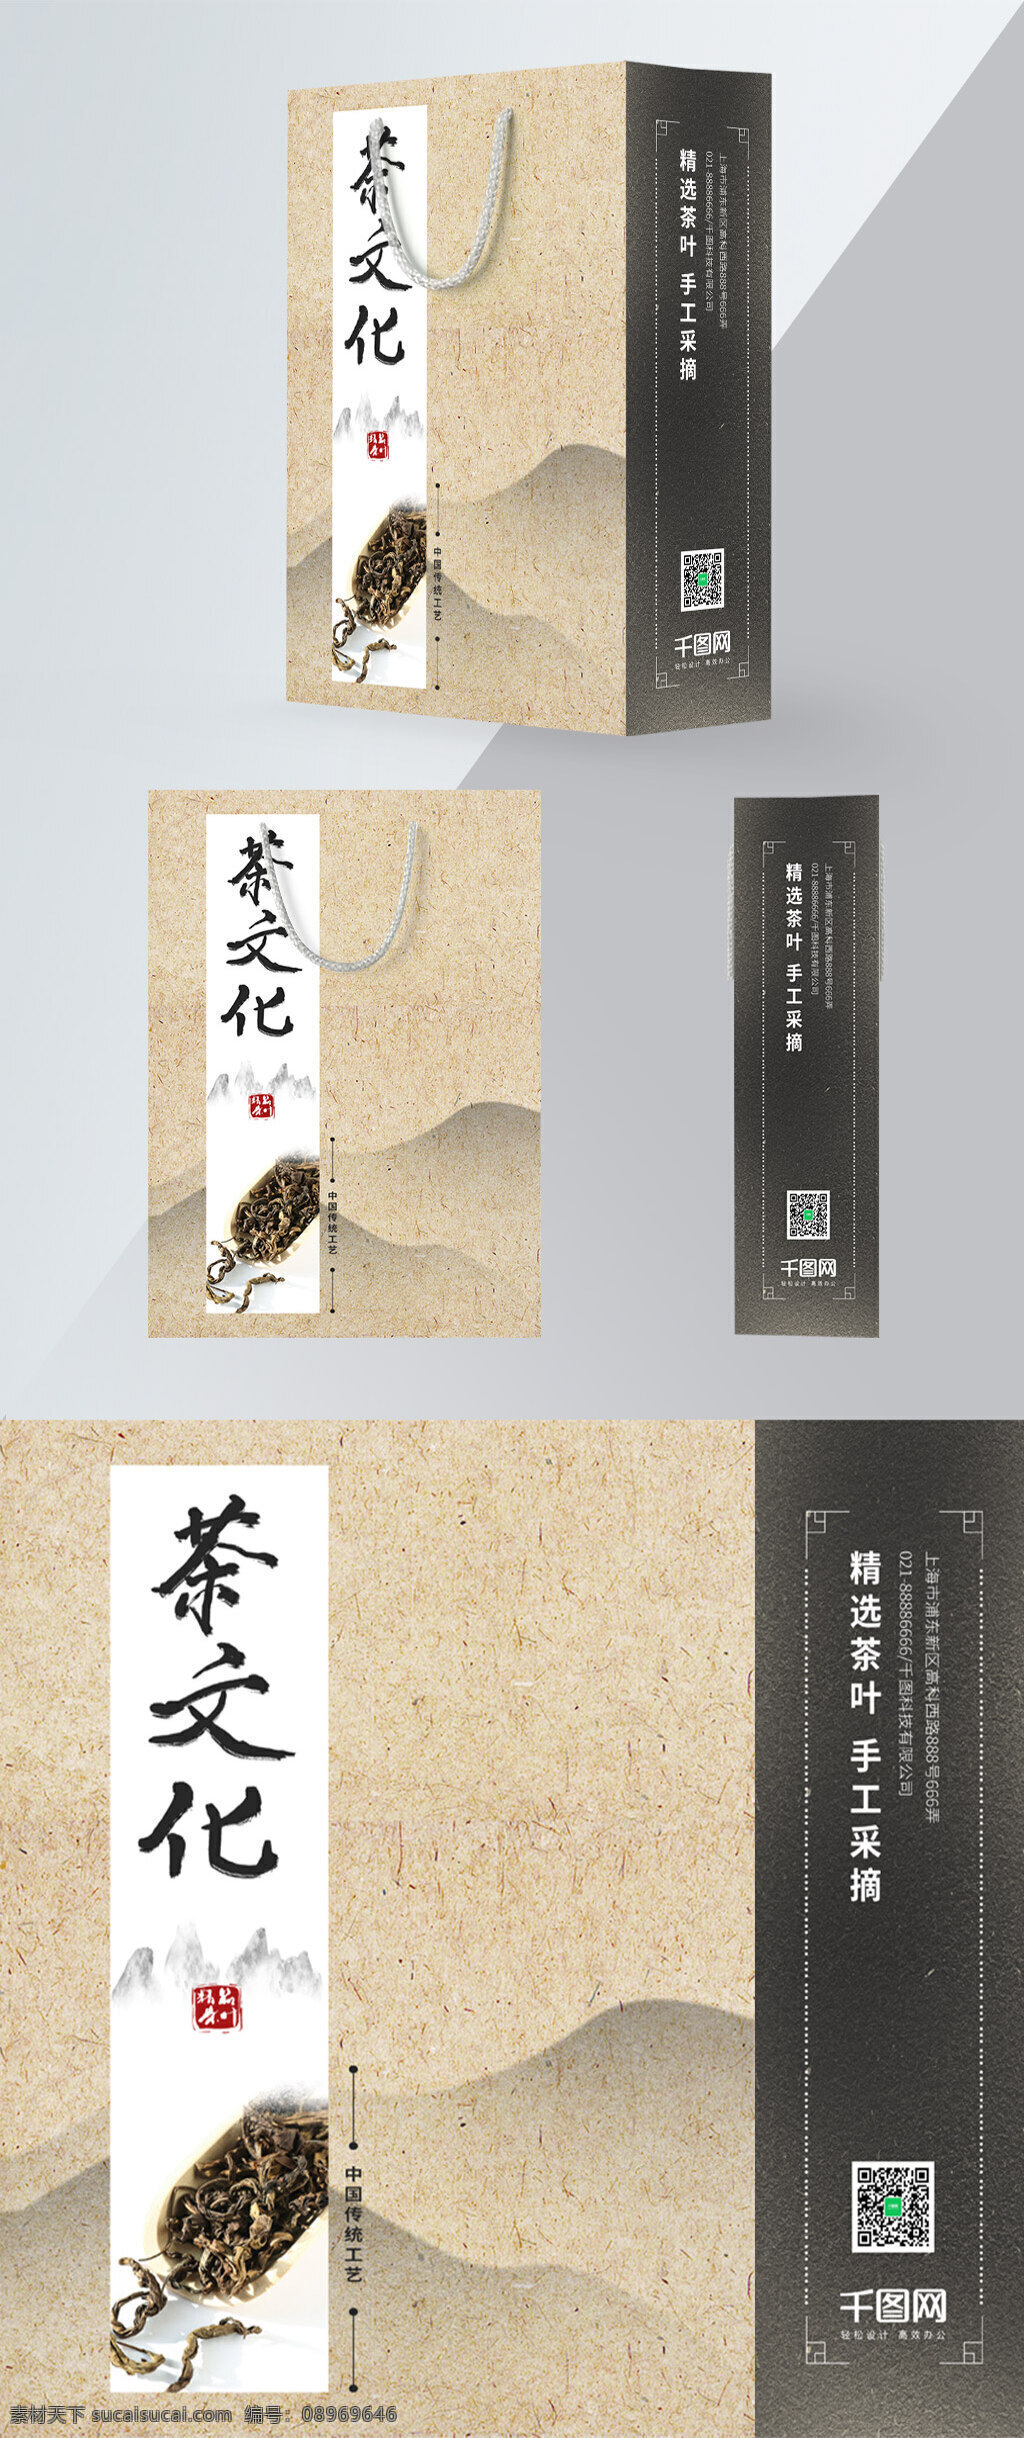 精品 简约 中国 风 茶文化 手提袋 模板 手提袋设计 茶叶 中式手提袋 中国风